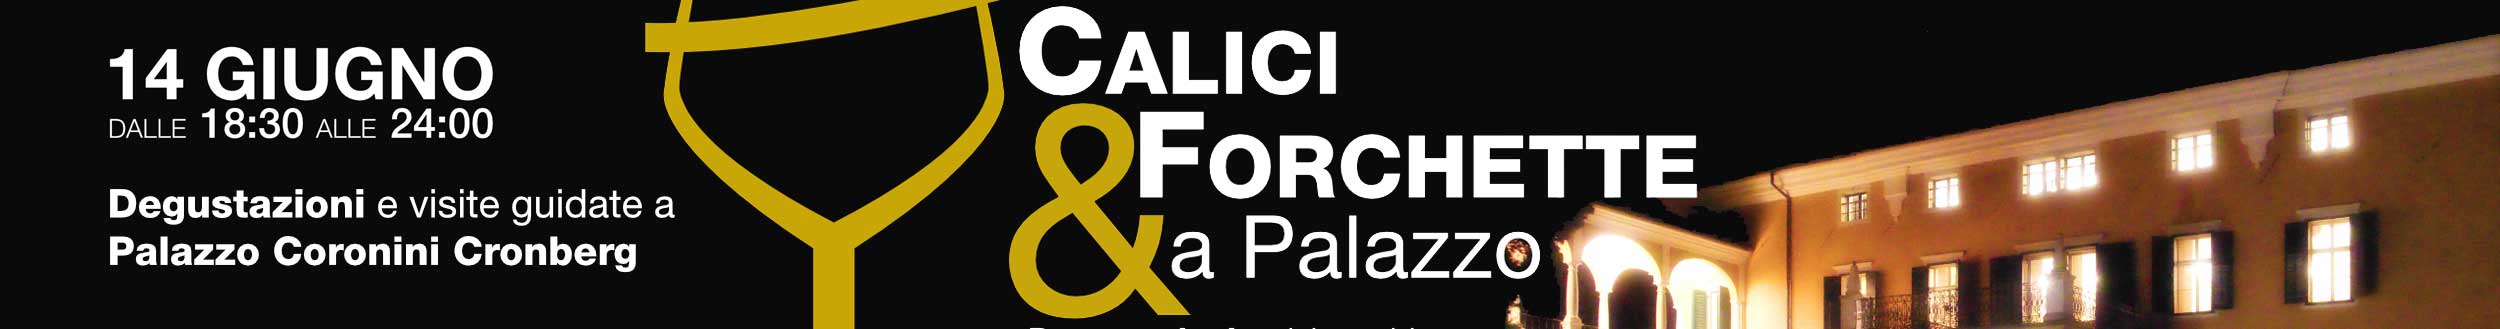 (Italiano) Calici e forchette a Palazzo